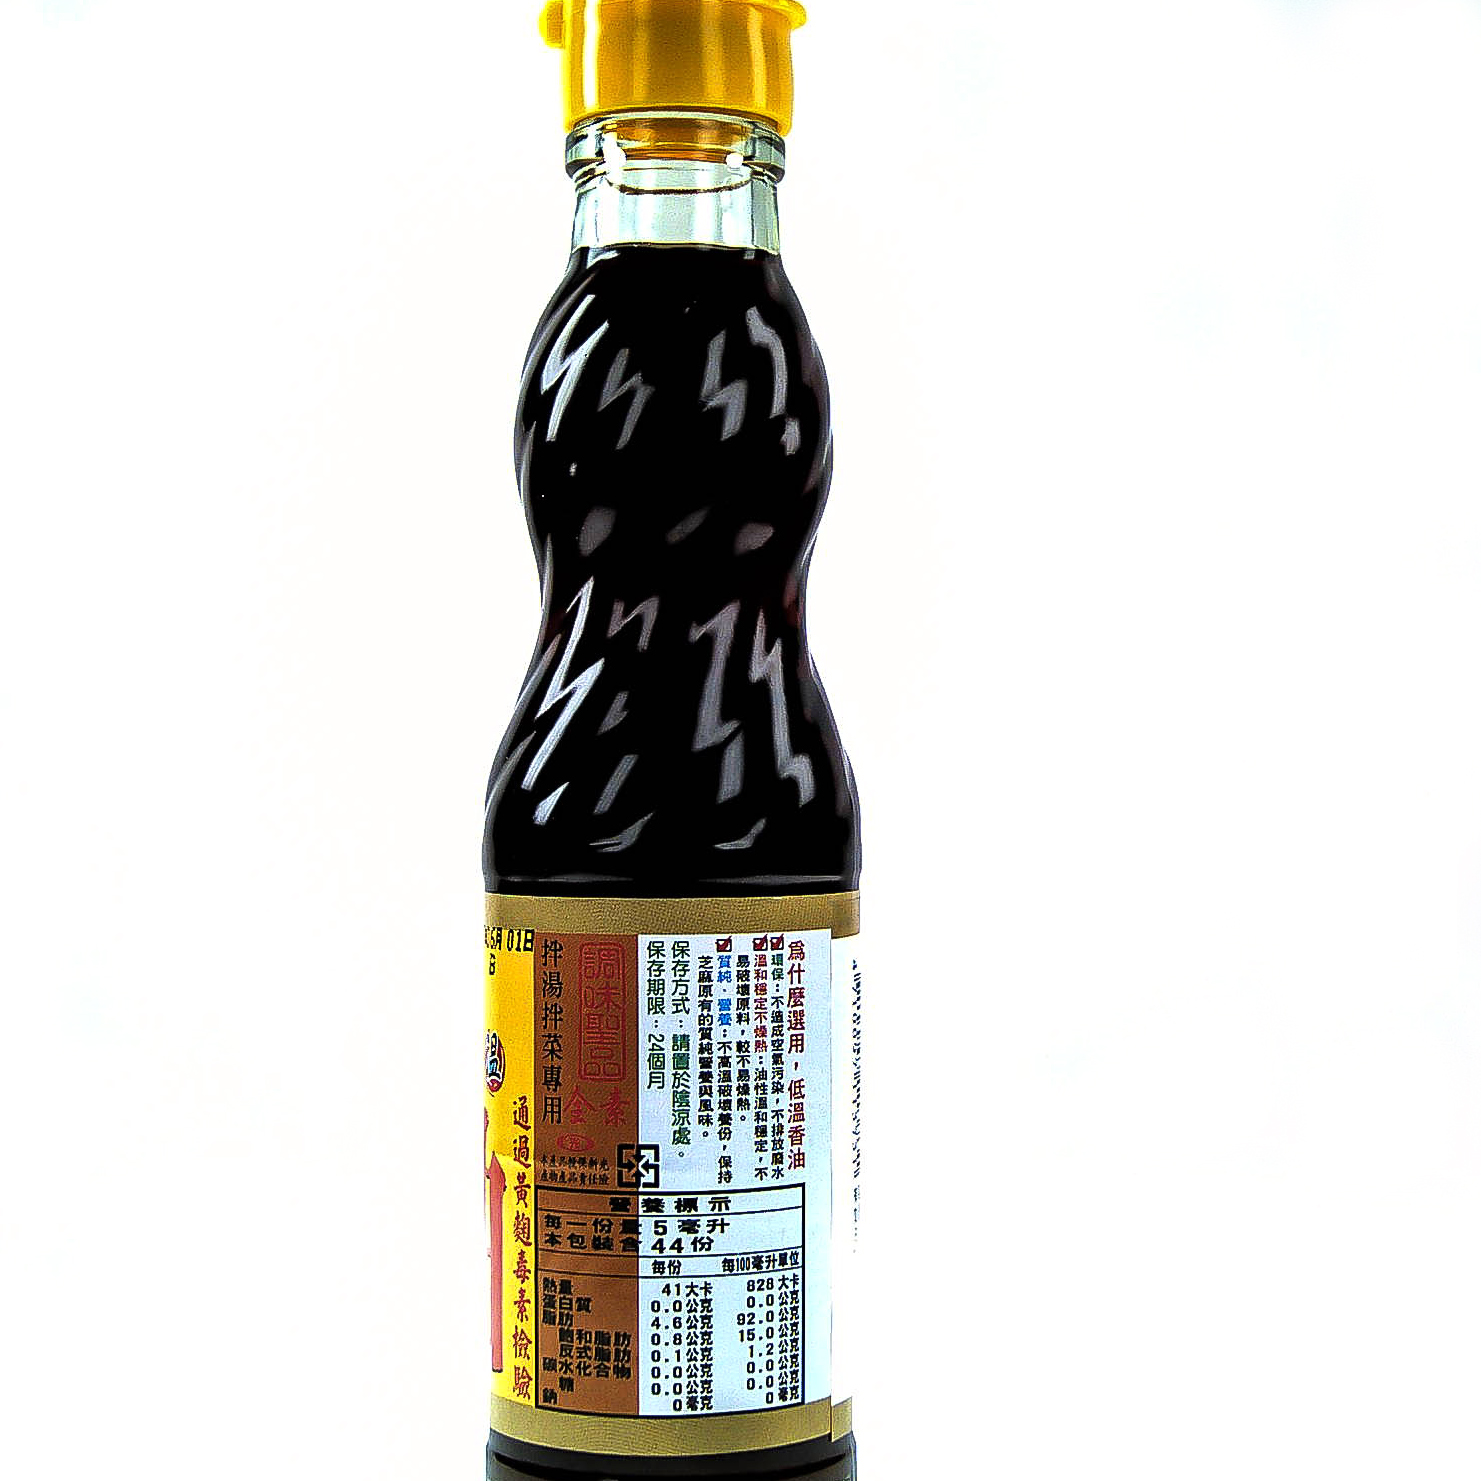 sesame oil, , large